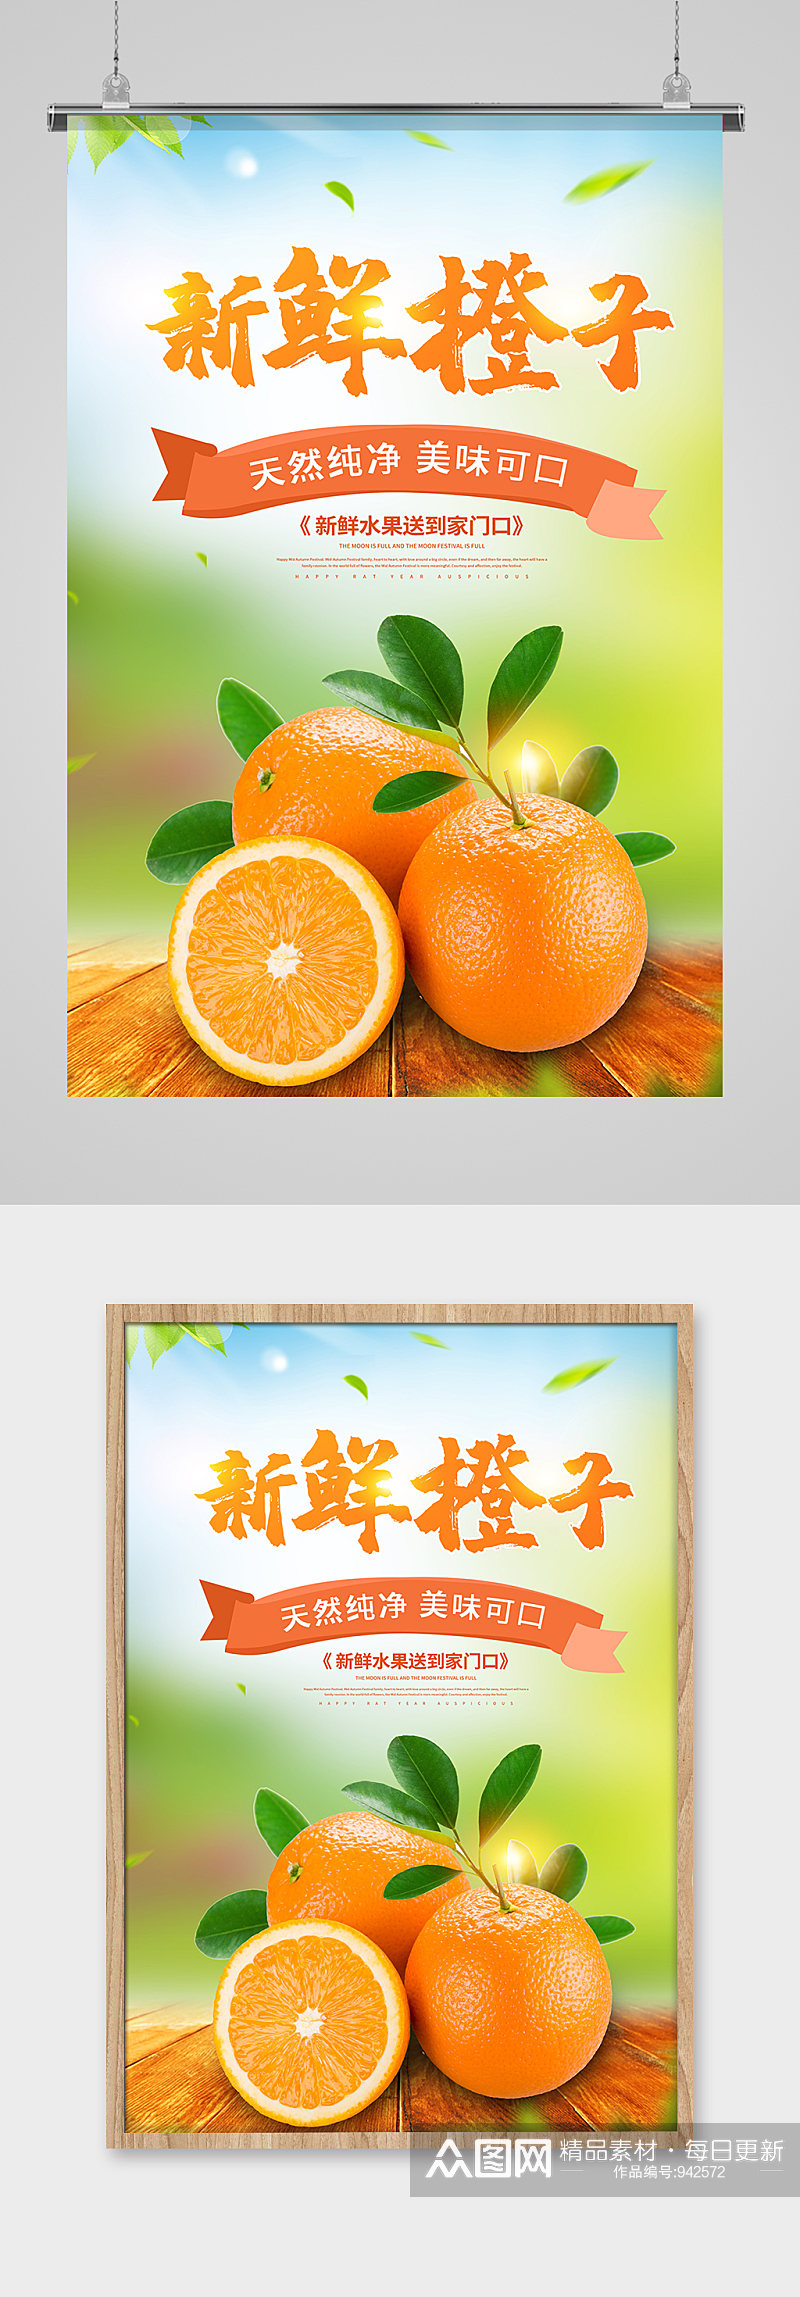 新鲜有机橙子海报设计素材